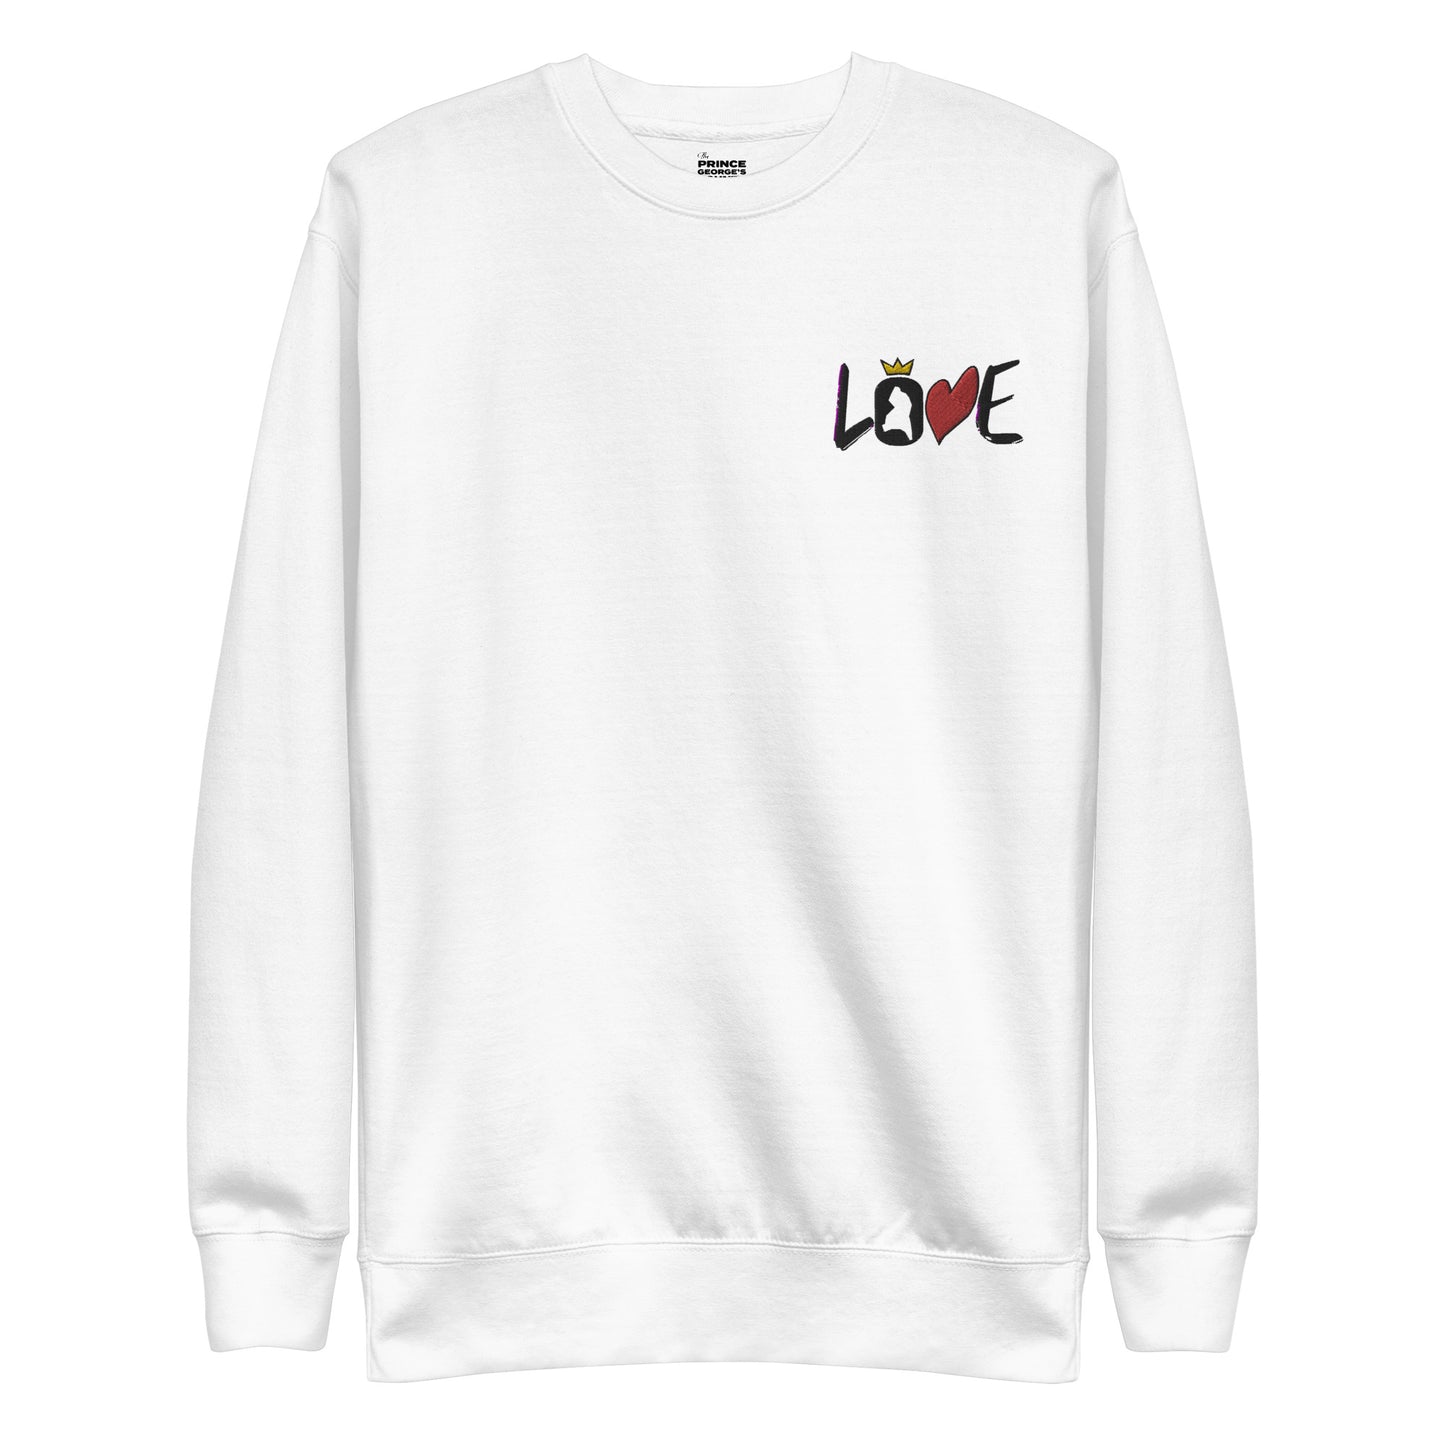 LOVE Stitched Pocket Unisex Premium Sweatshirt